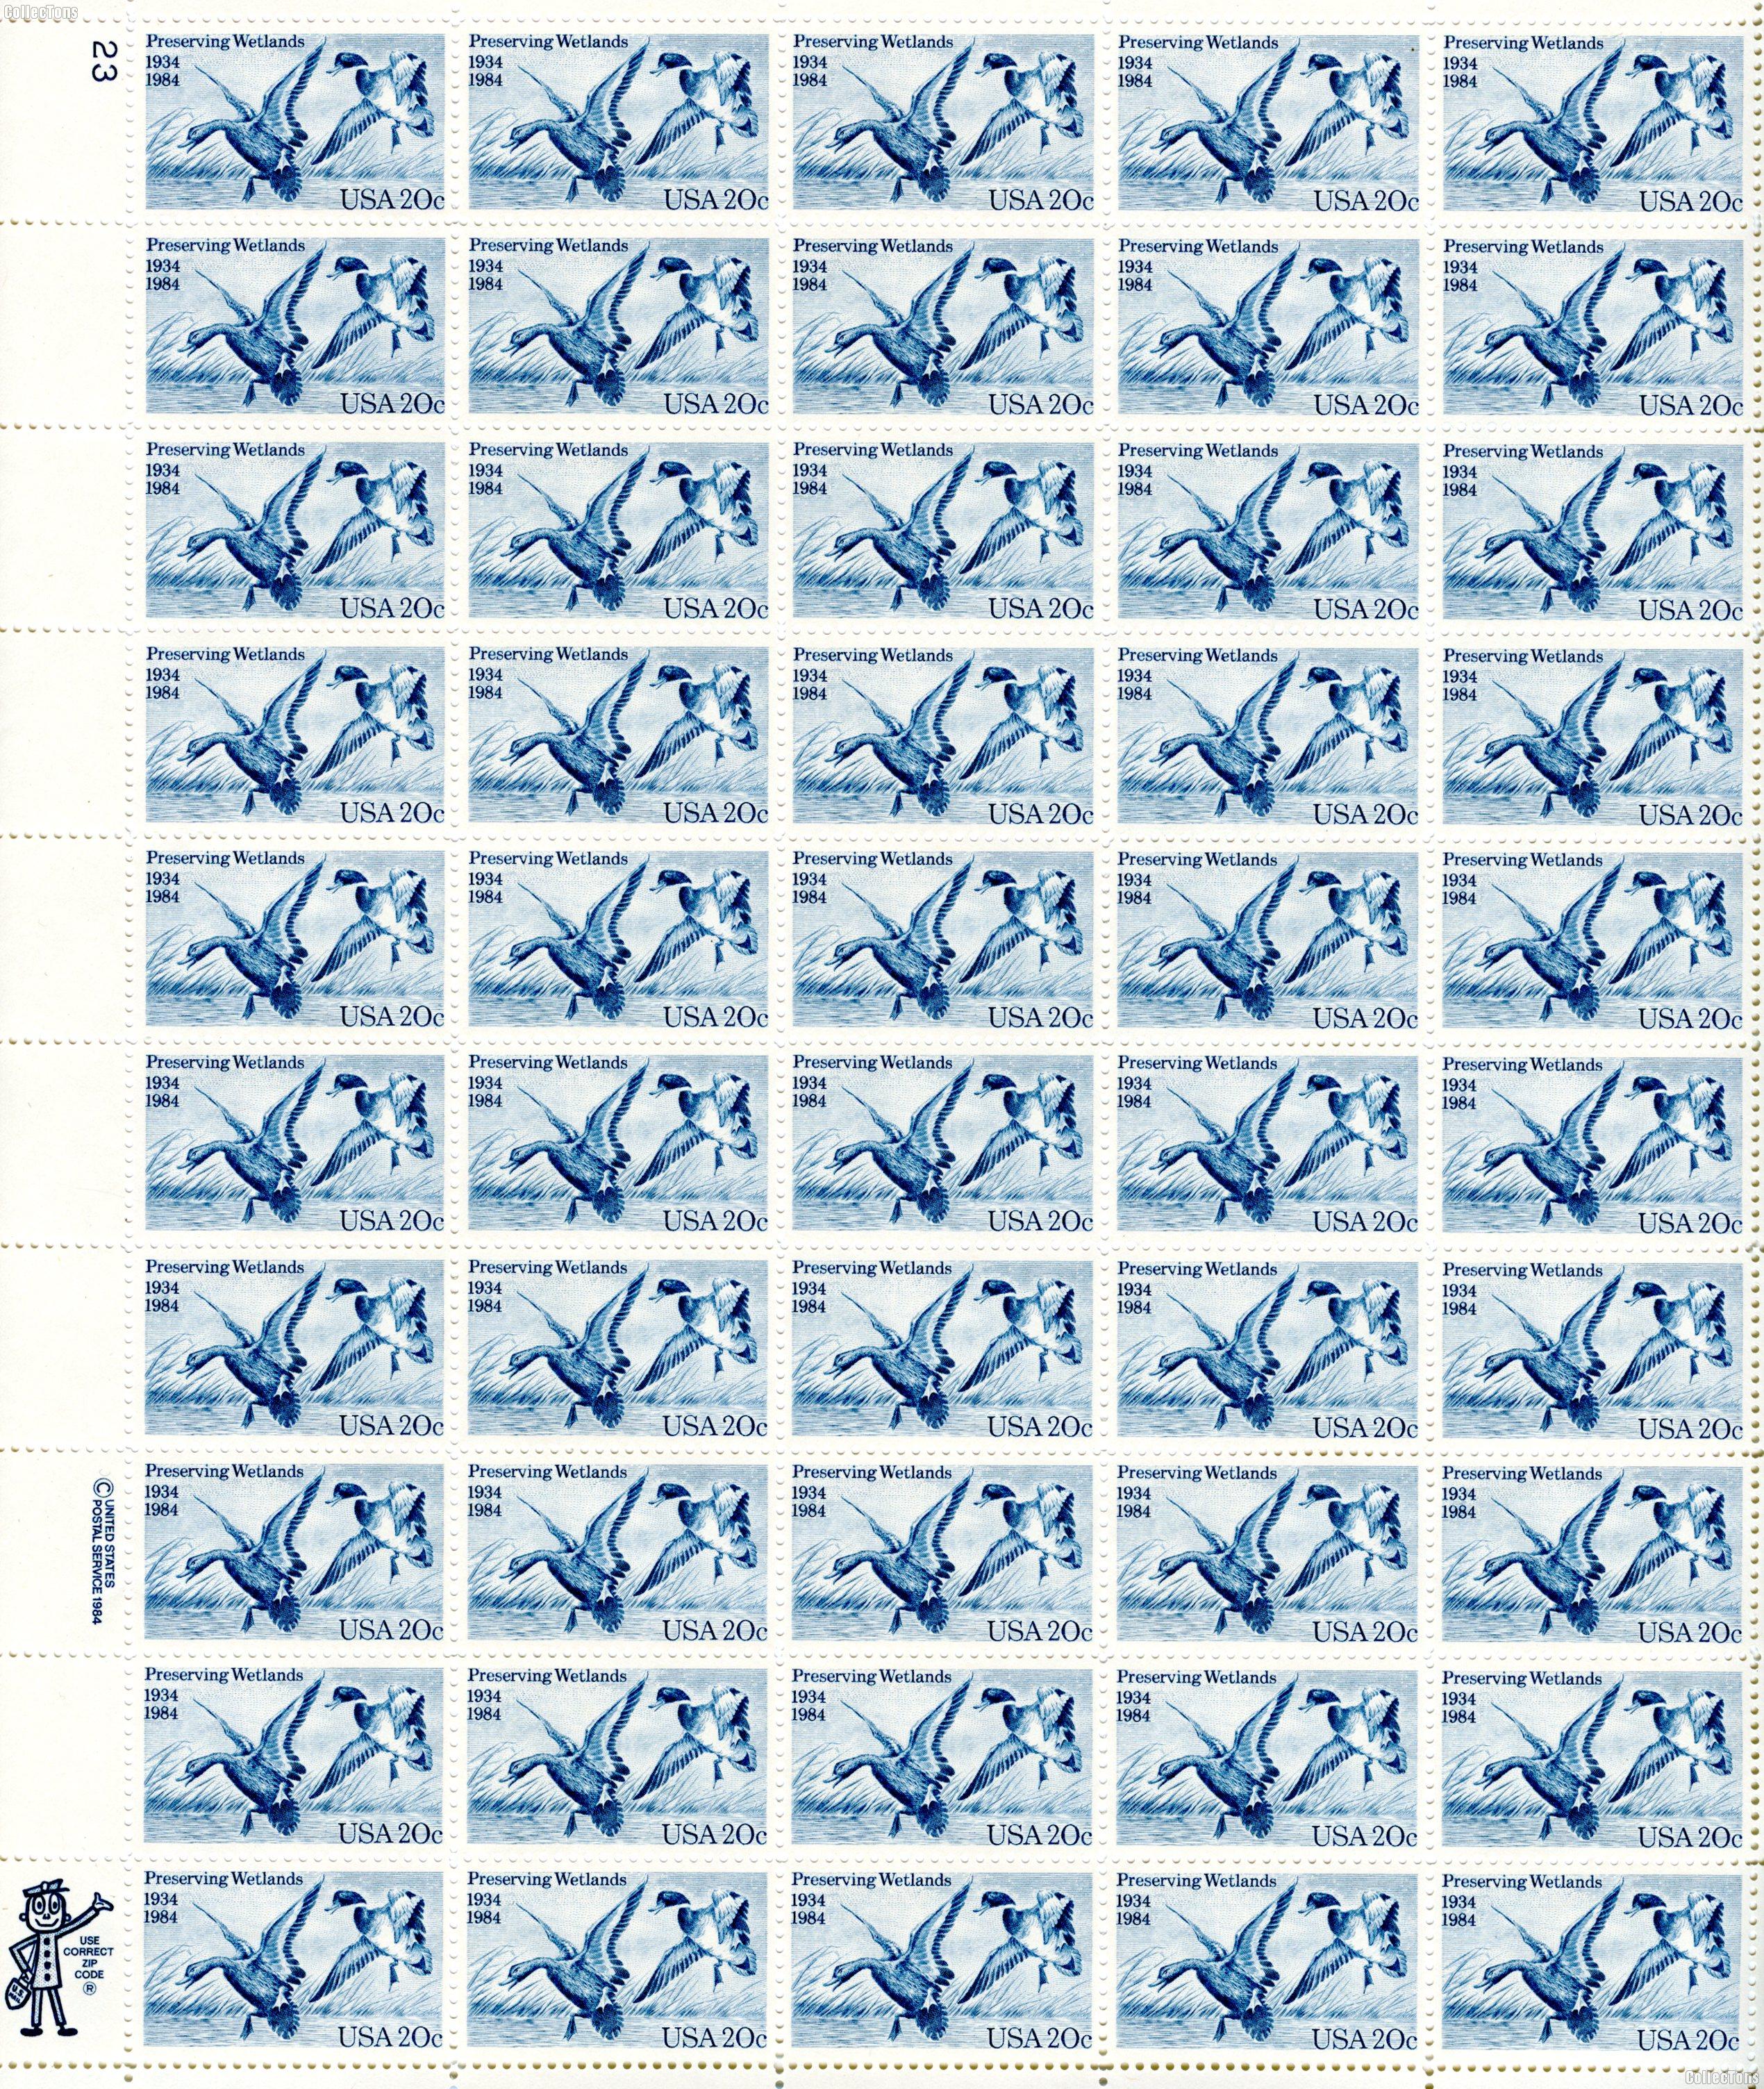 1984 Preserving Wetlands 20 Cent US Postage Stamp MNH Sheet of 50 Scott #2092